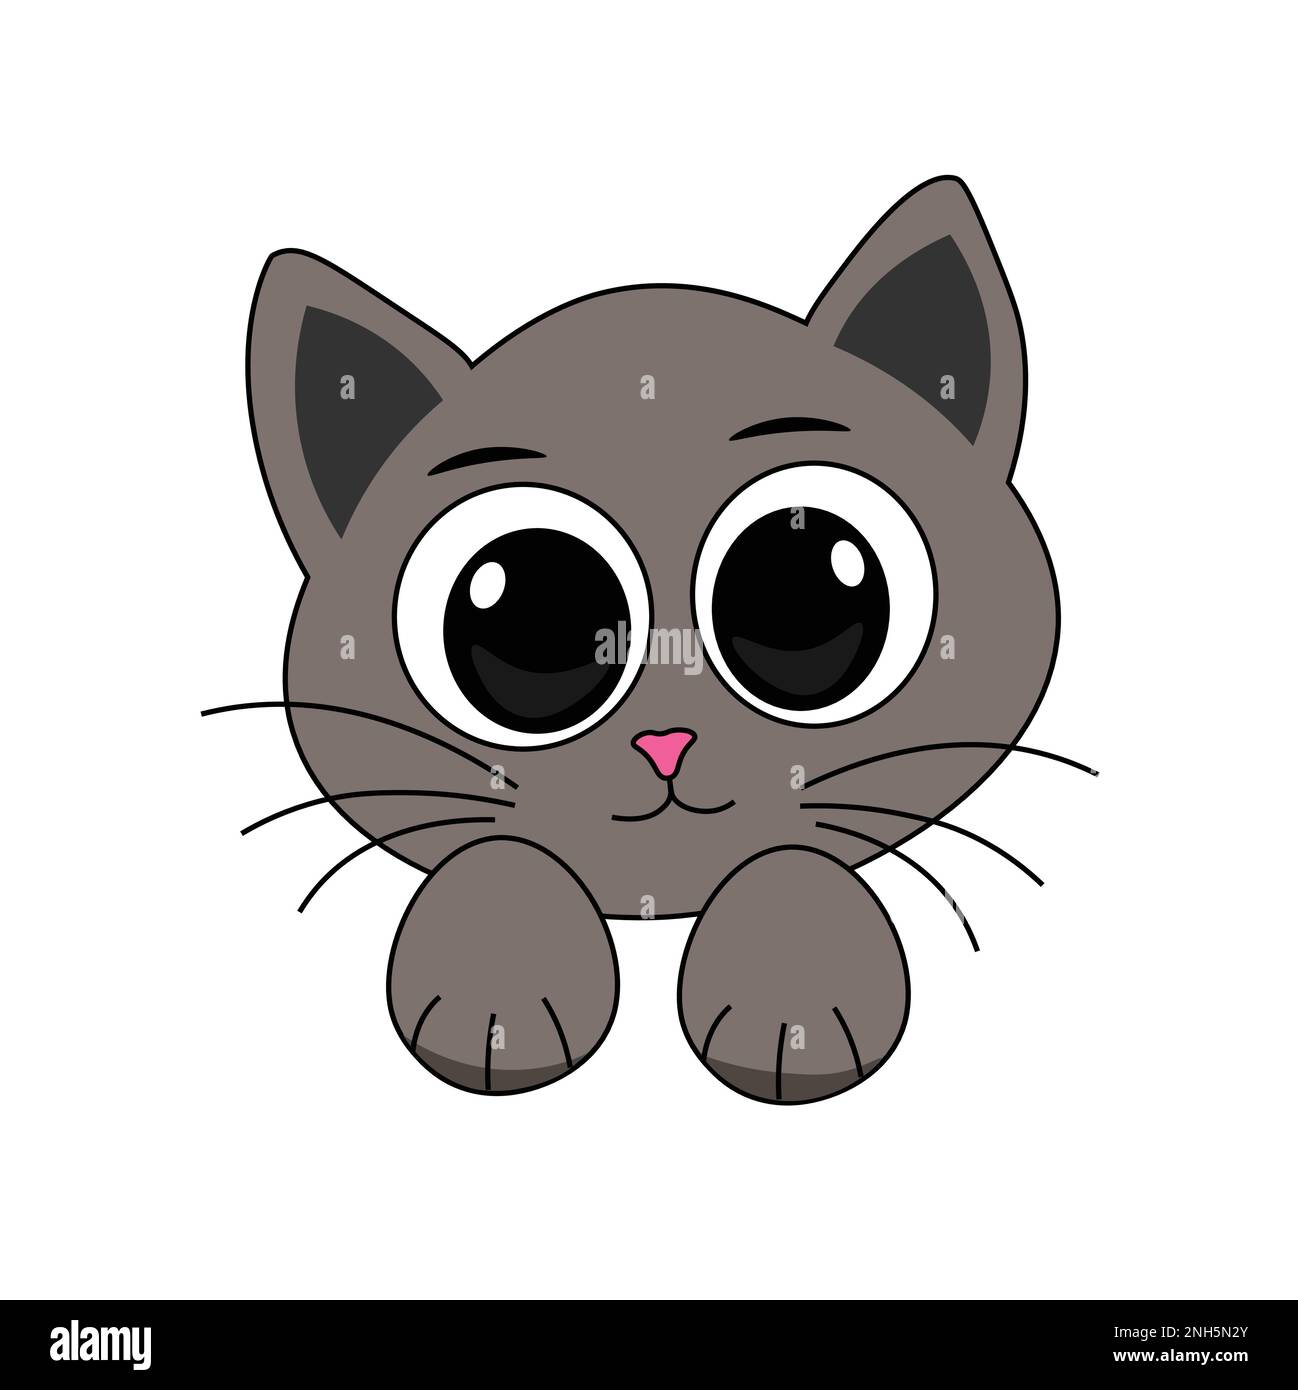 Cute cat face cartoon clipart Stock Vector